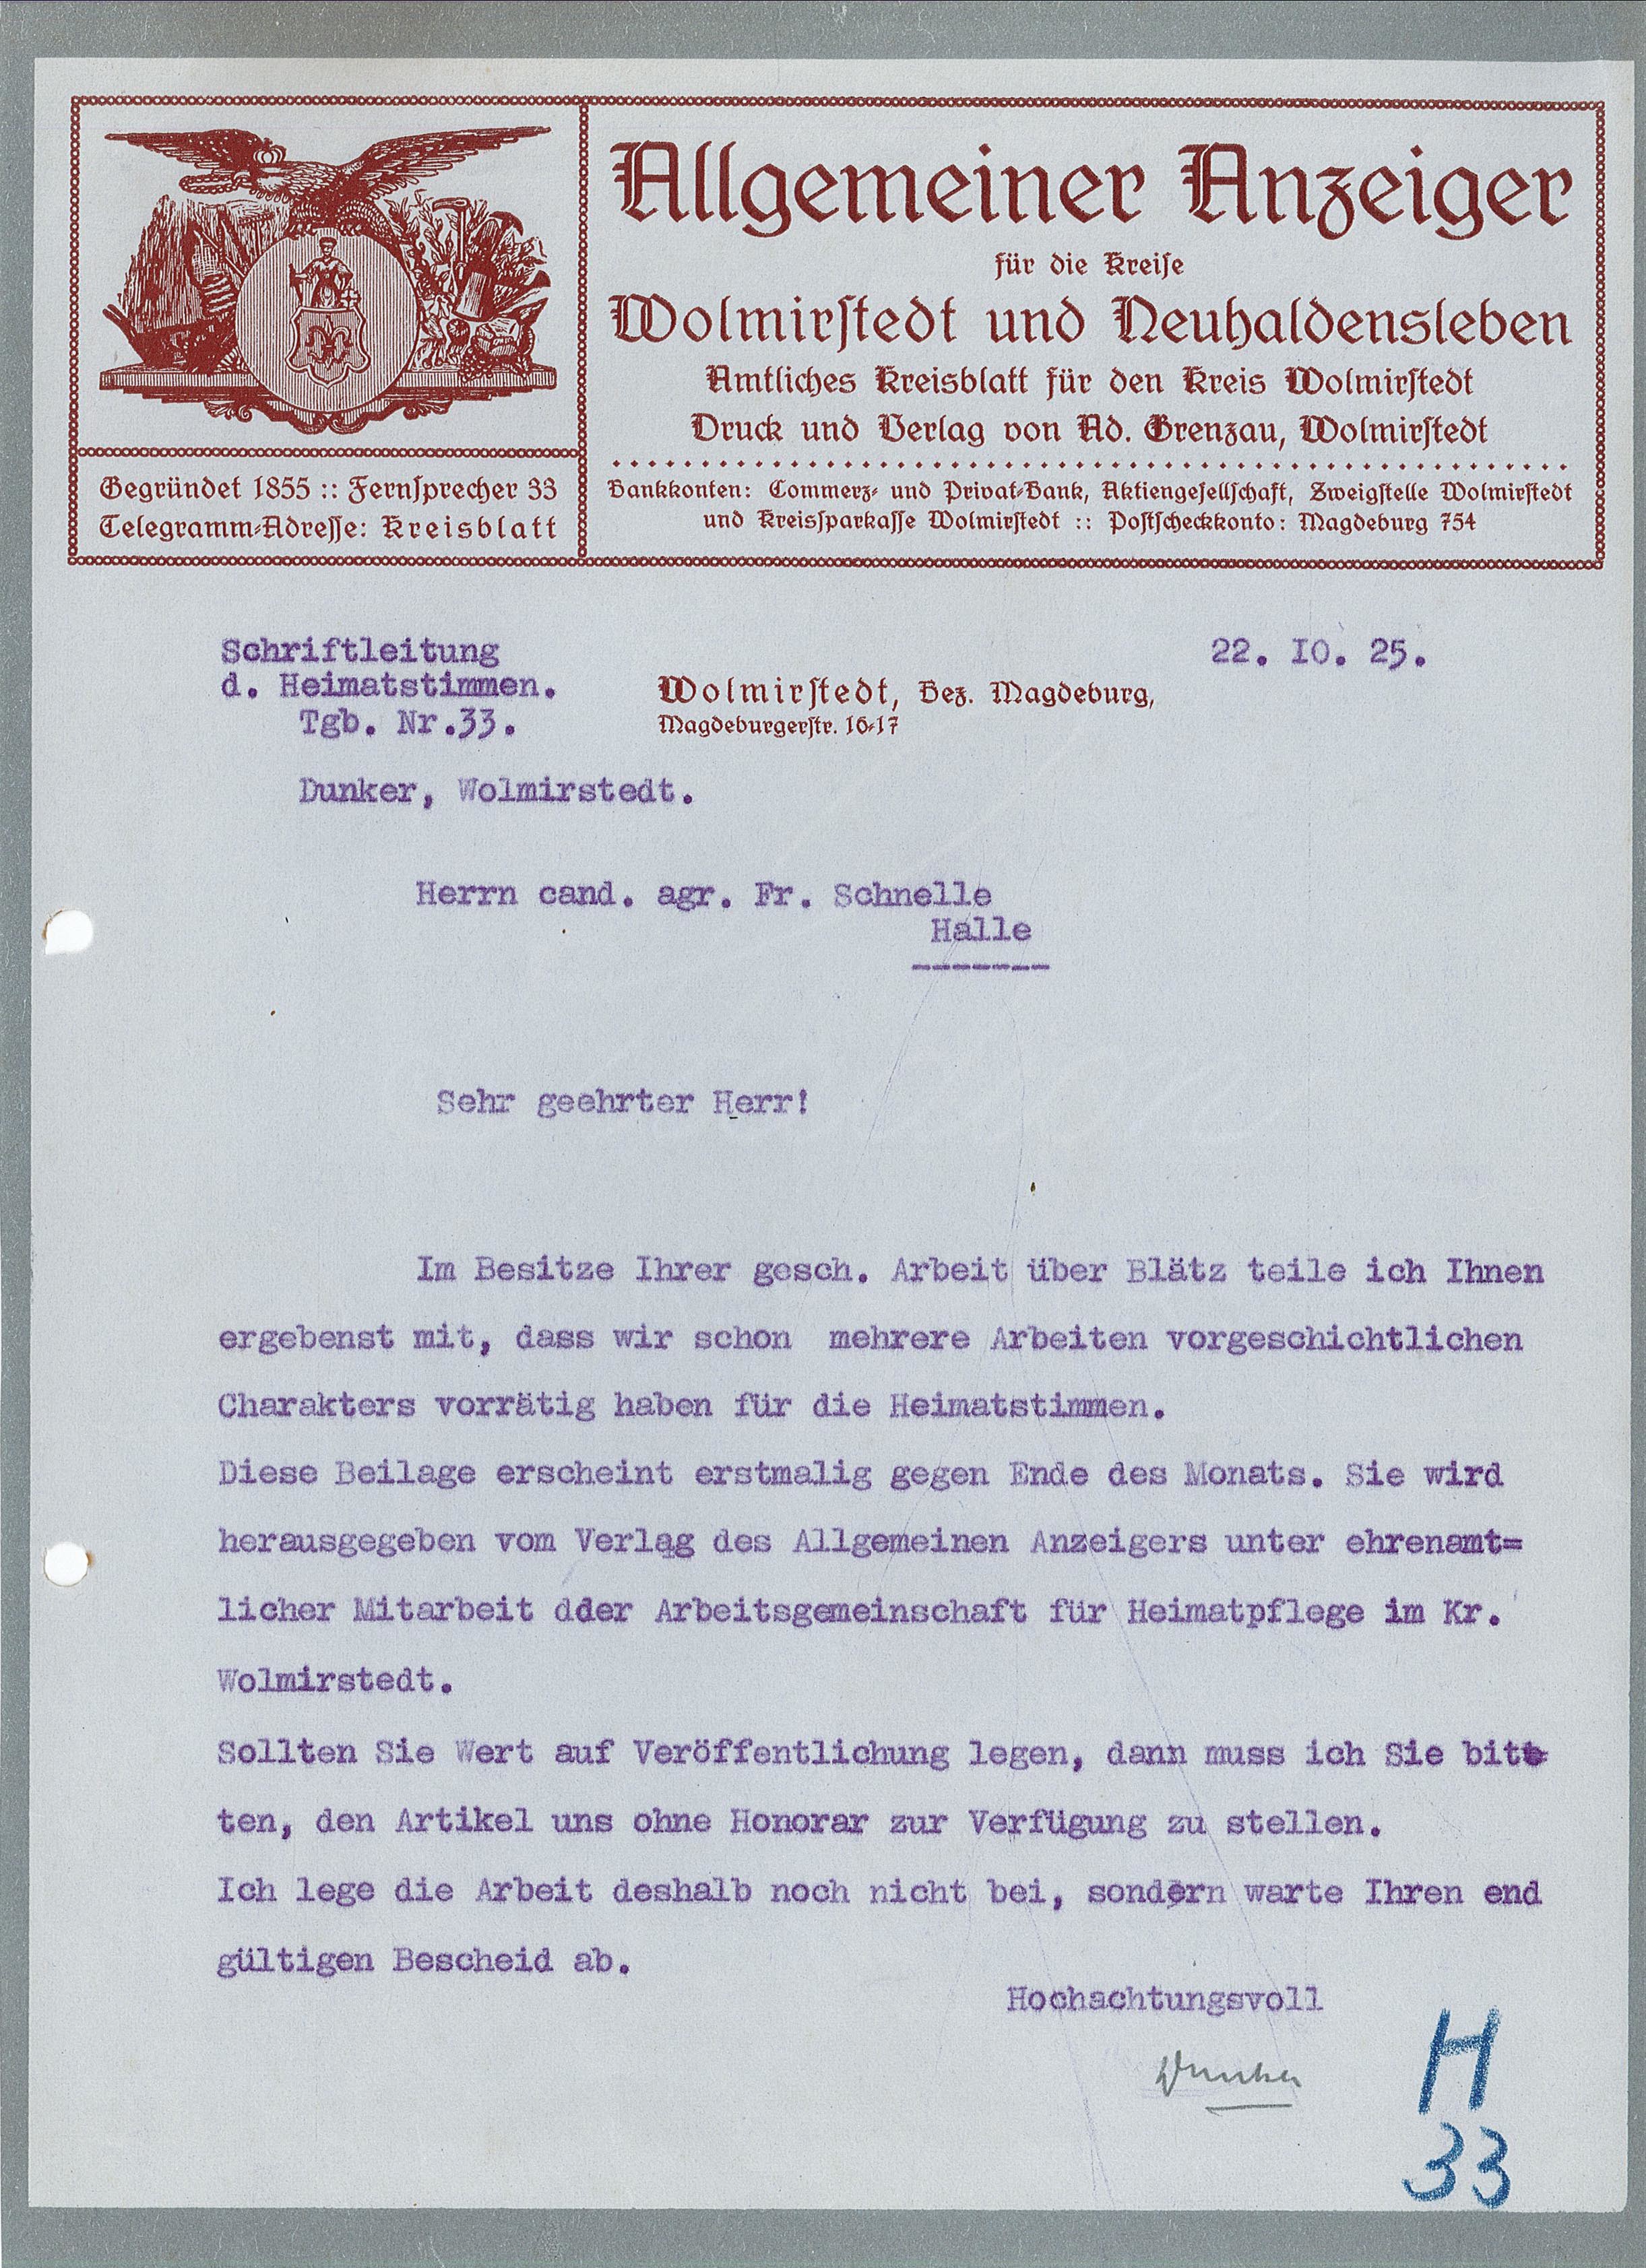 Schreiben Druckerei Grenzau - zu "Heimatstimmen" - 22.10.1925 (Museum Wolmirstedt RR-F)